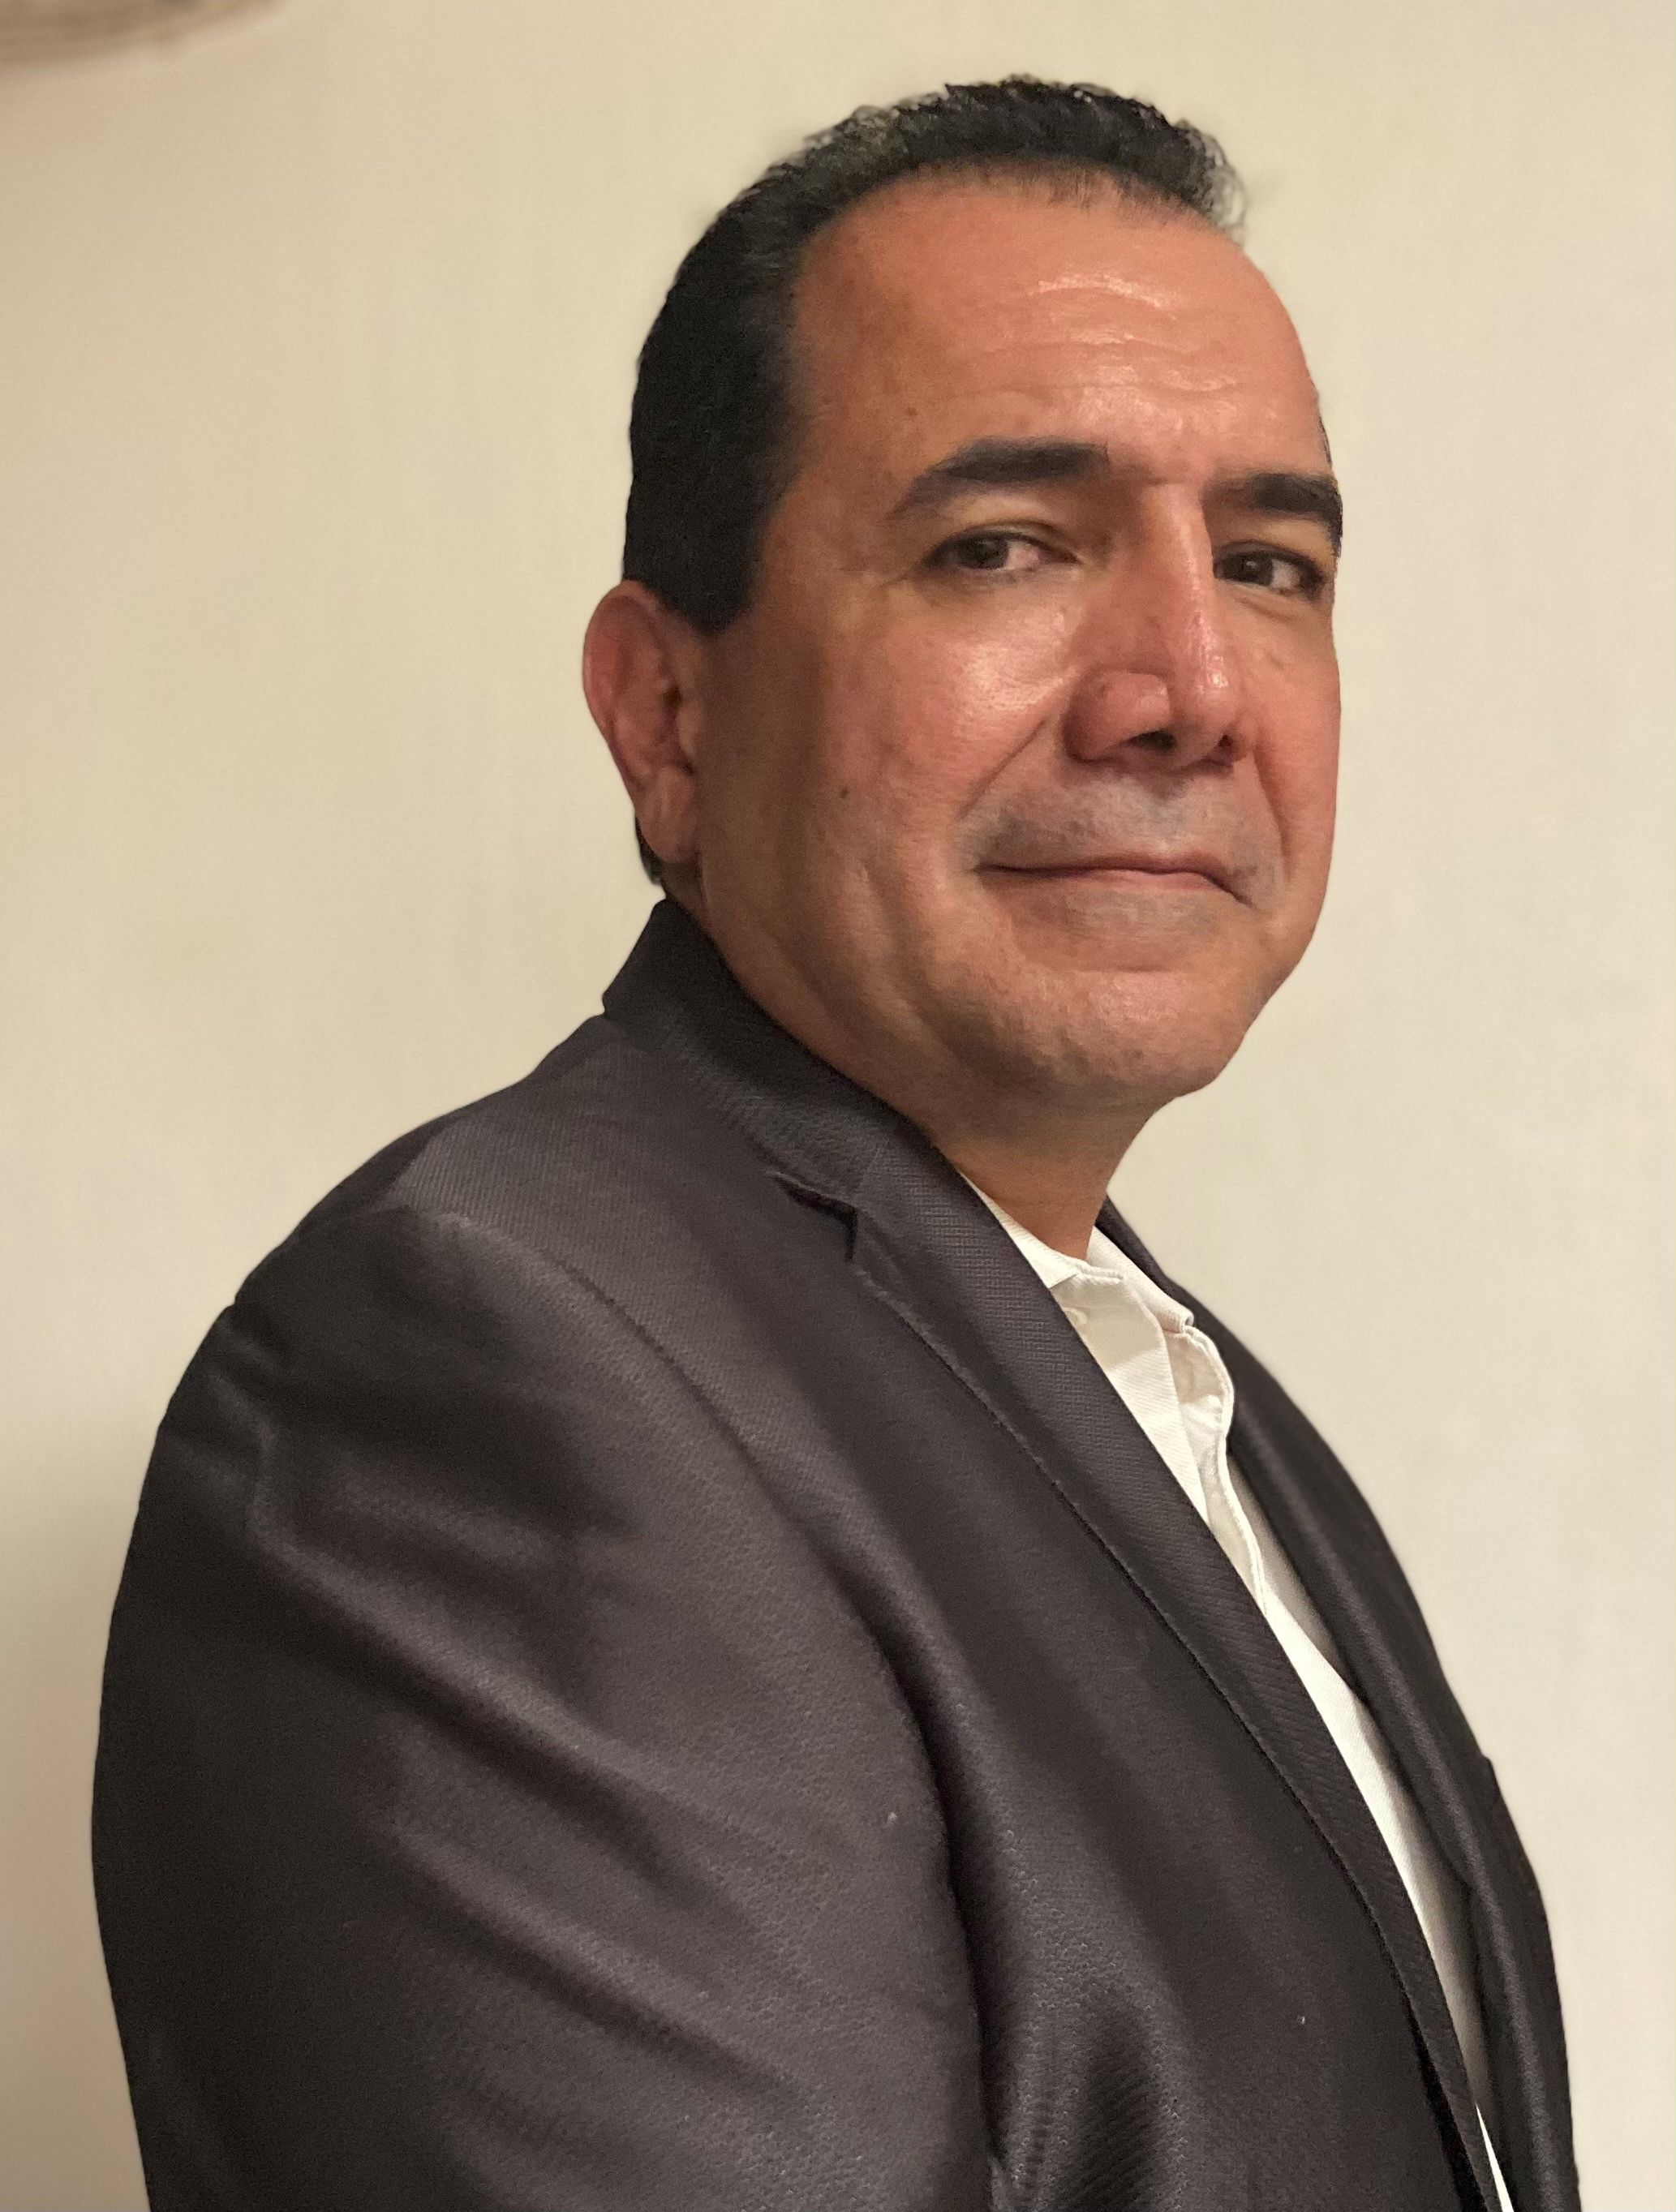 Jorge Ramírez